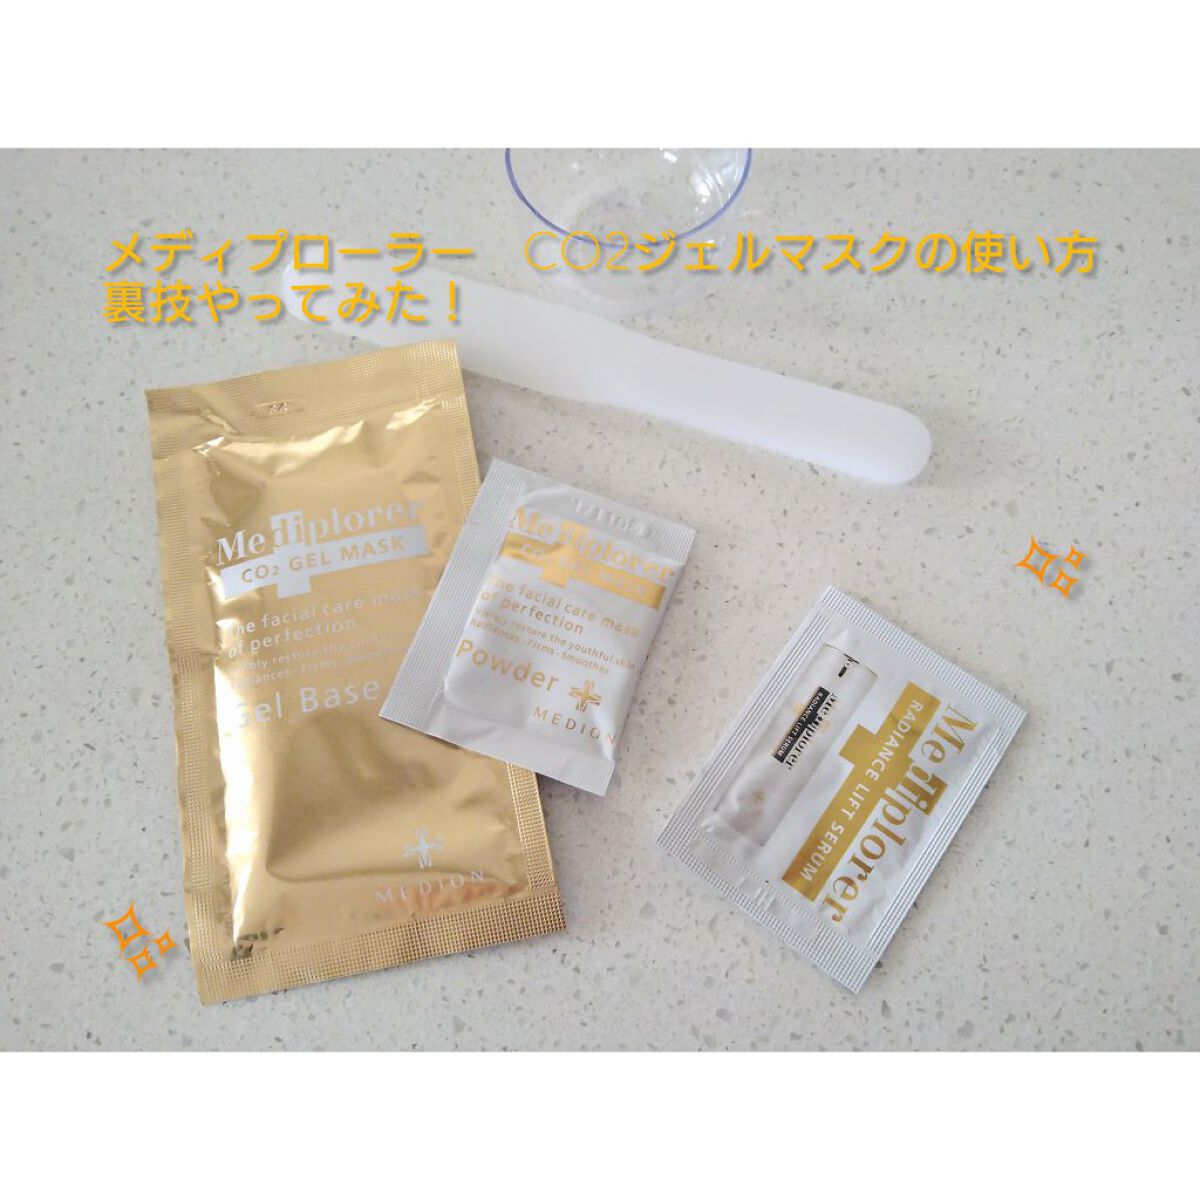 メディプローラー 炭酸パック CO2ジェルマスク 30回分+apple-en.jp